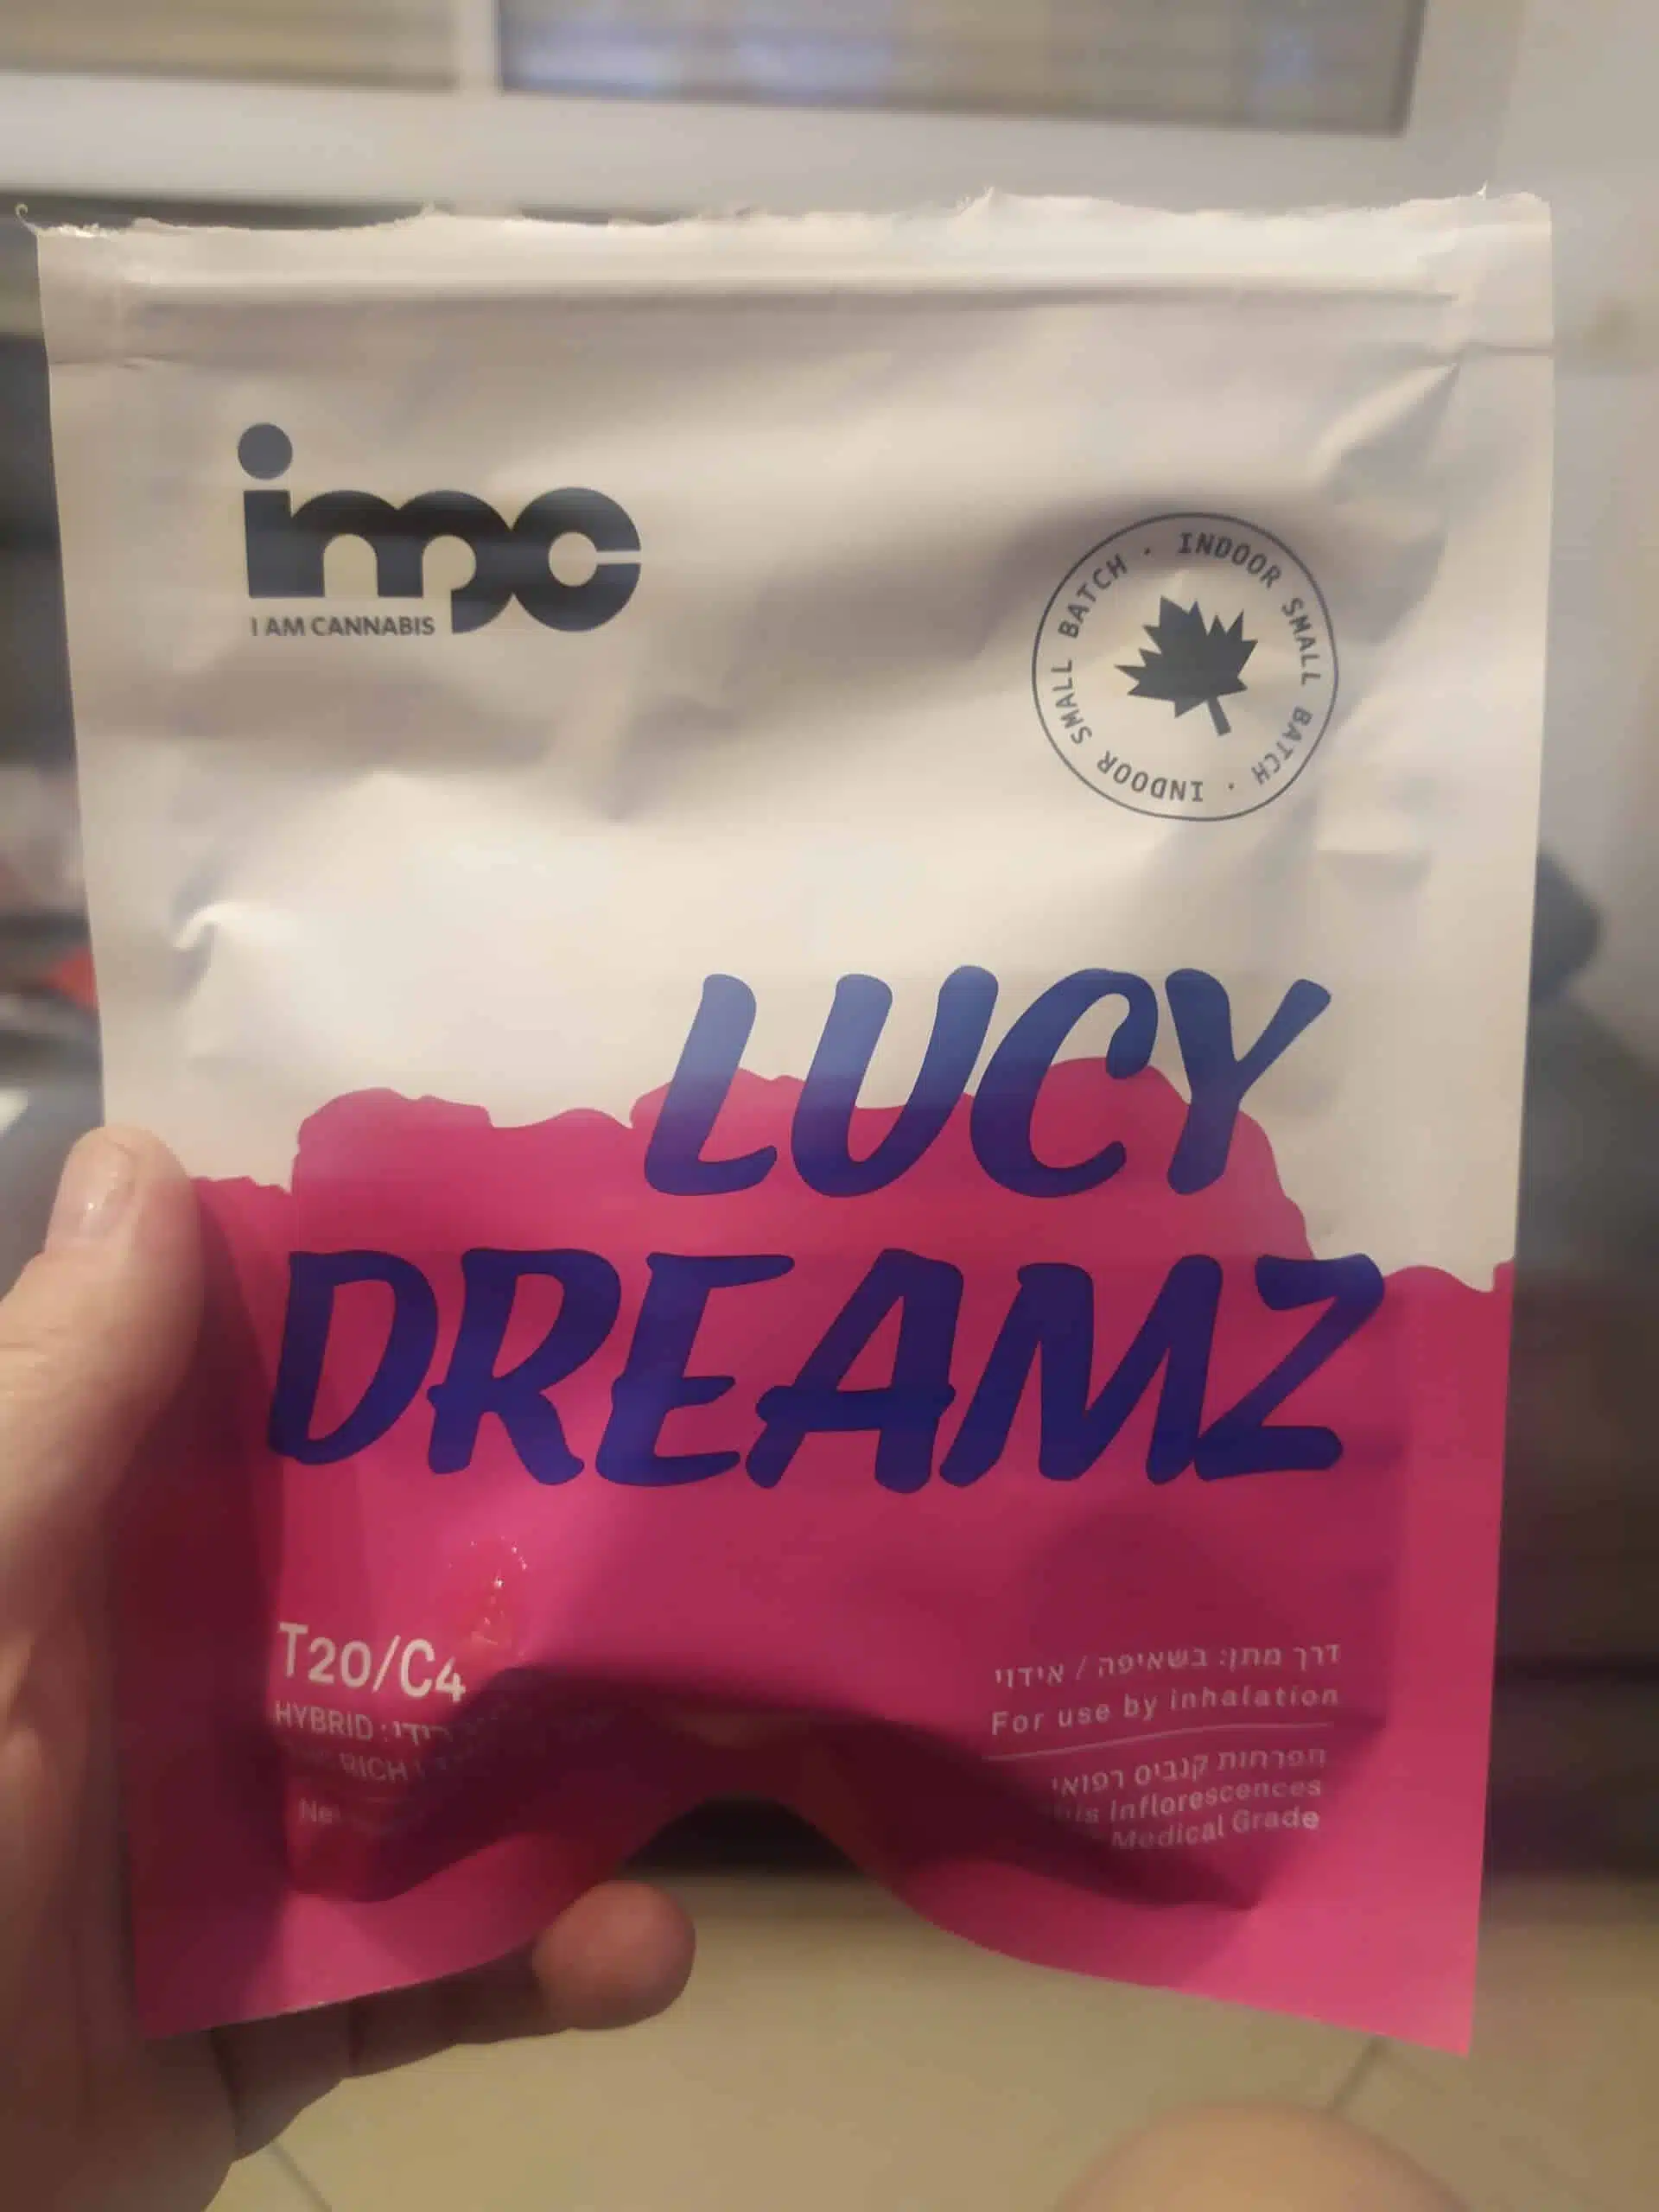 לוסי דרימז (Lucy Dreamz) - היבריד T20/C4 photo review